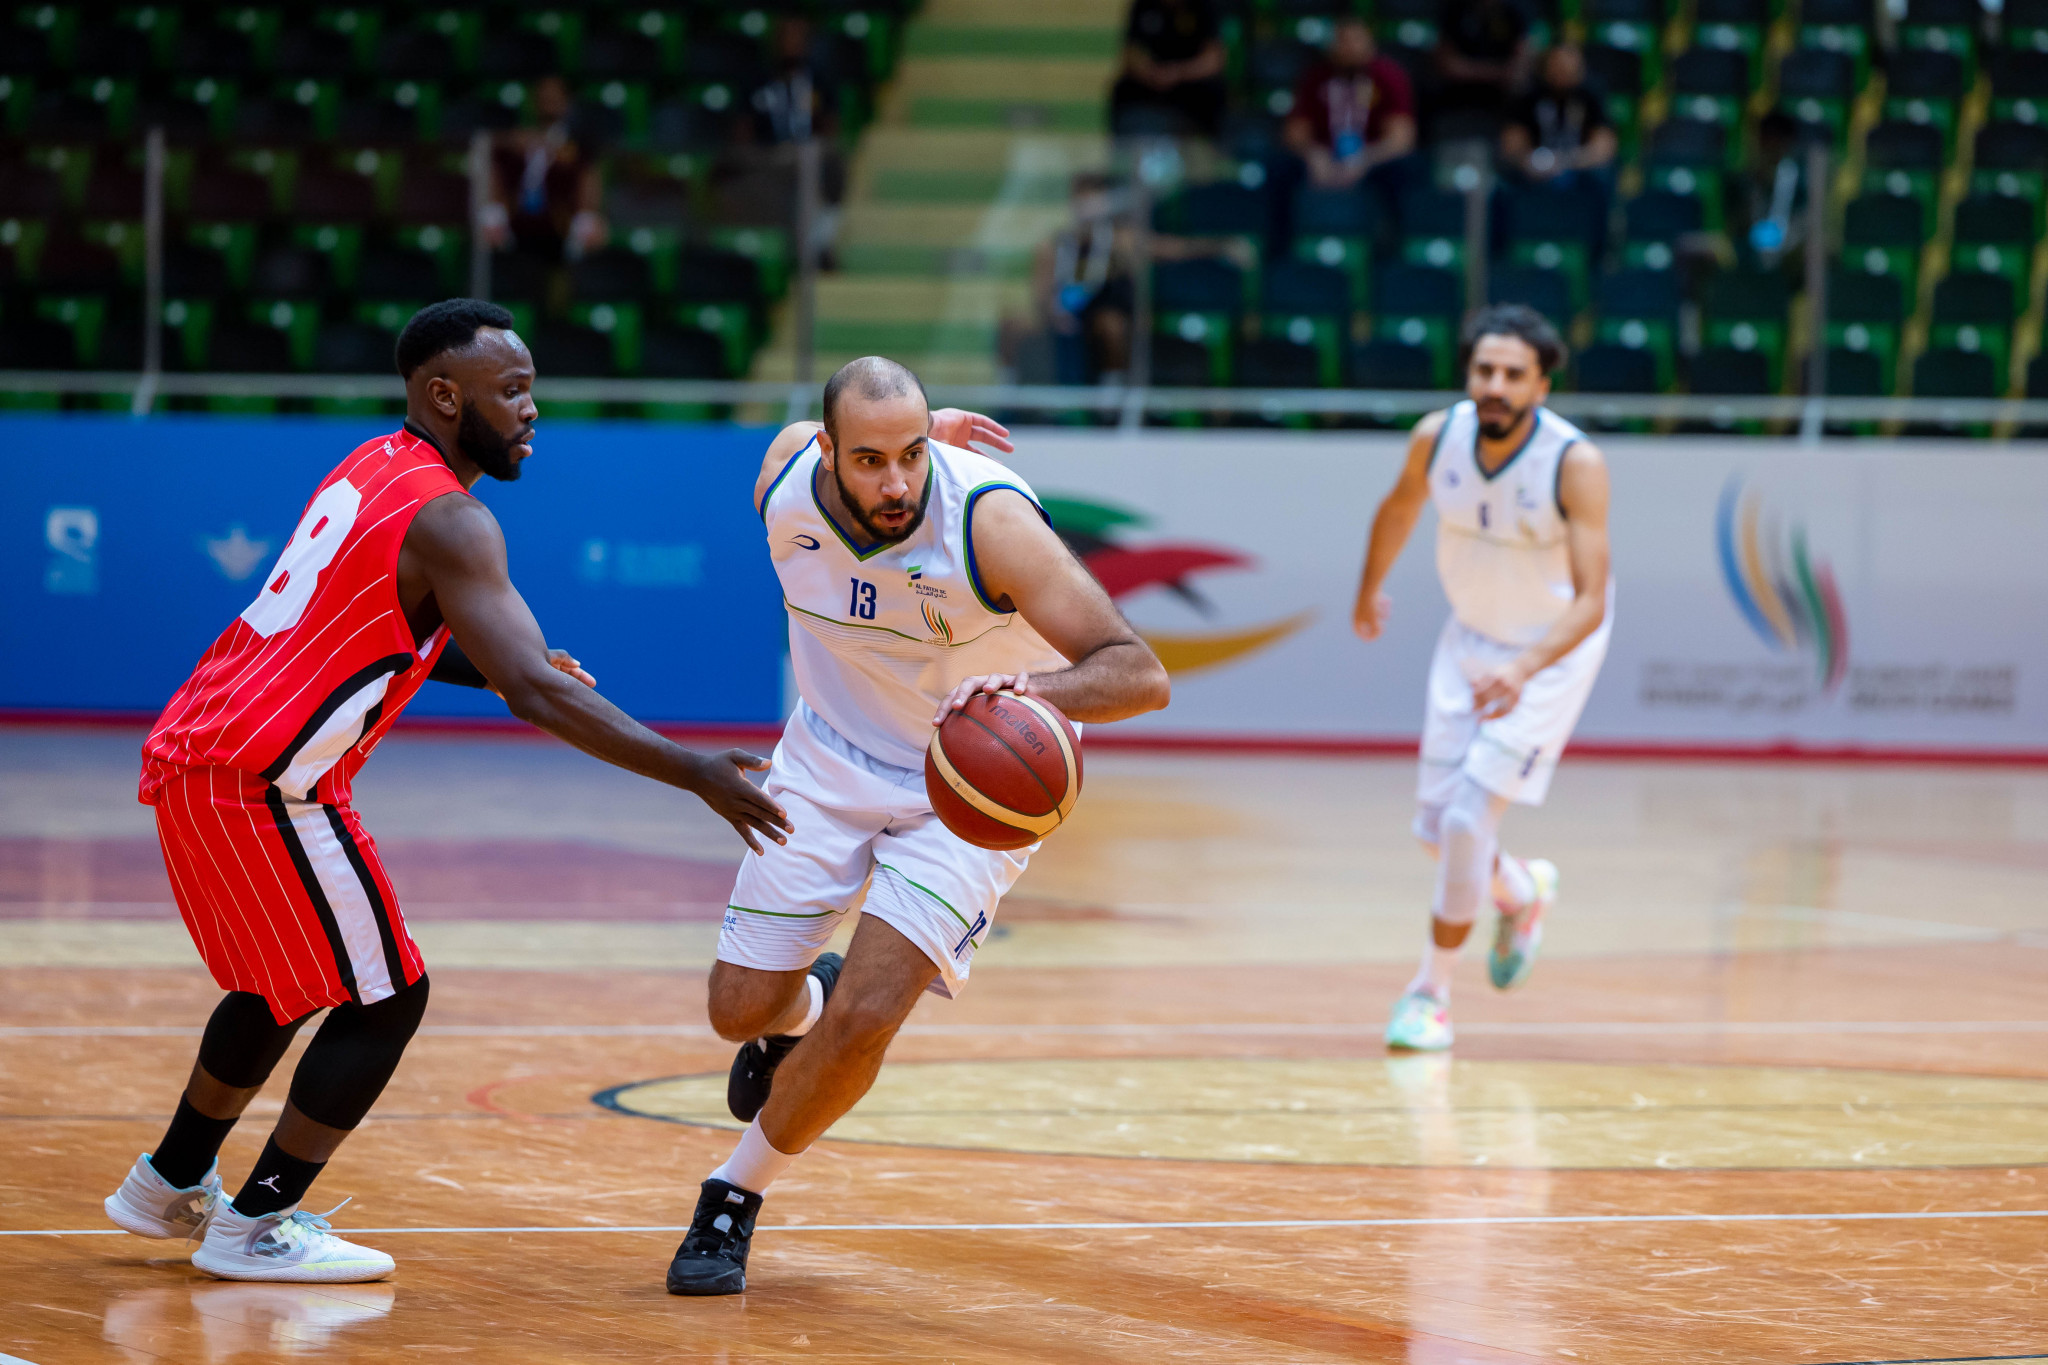 Al-Fateh achieved bronze in the men's basketball ©Saudi Games